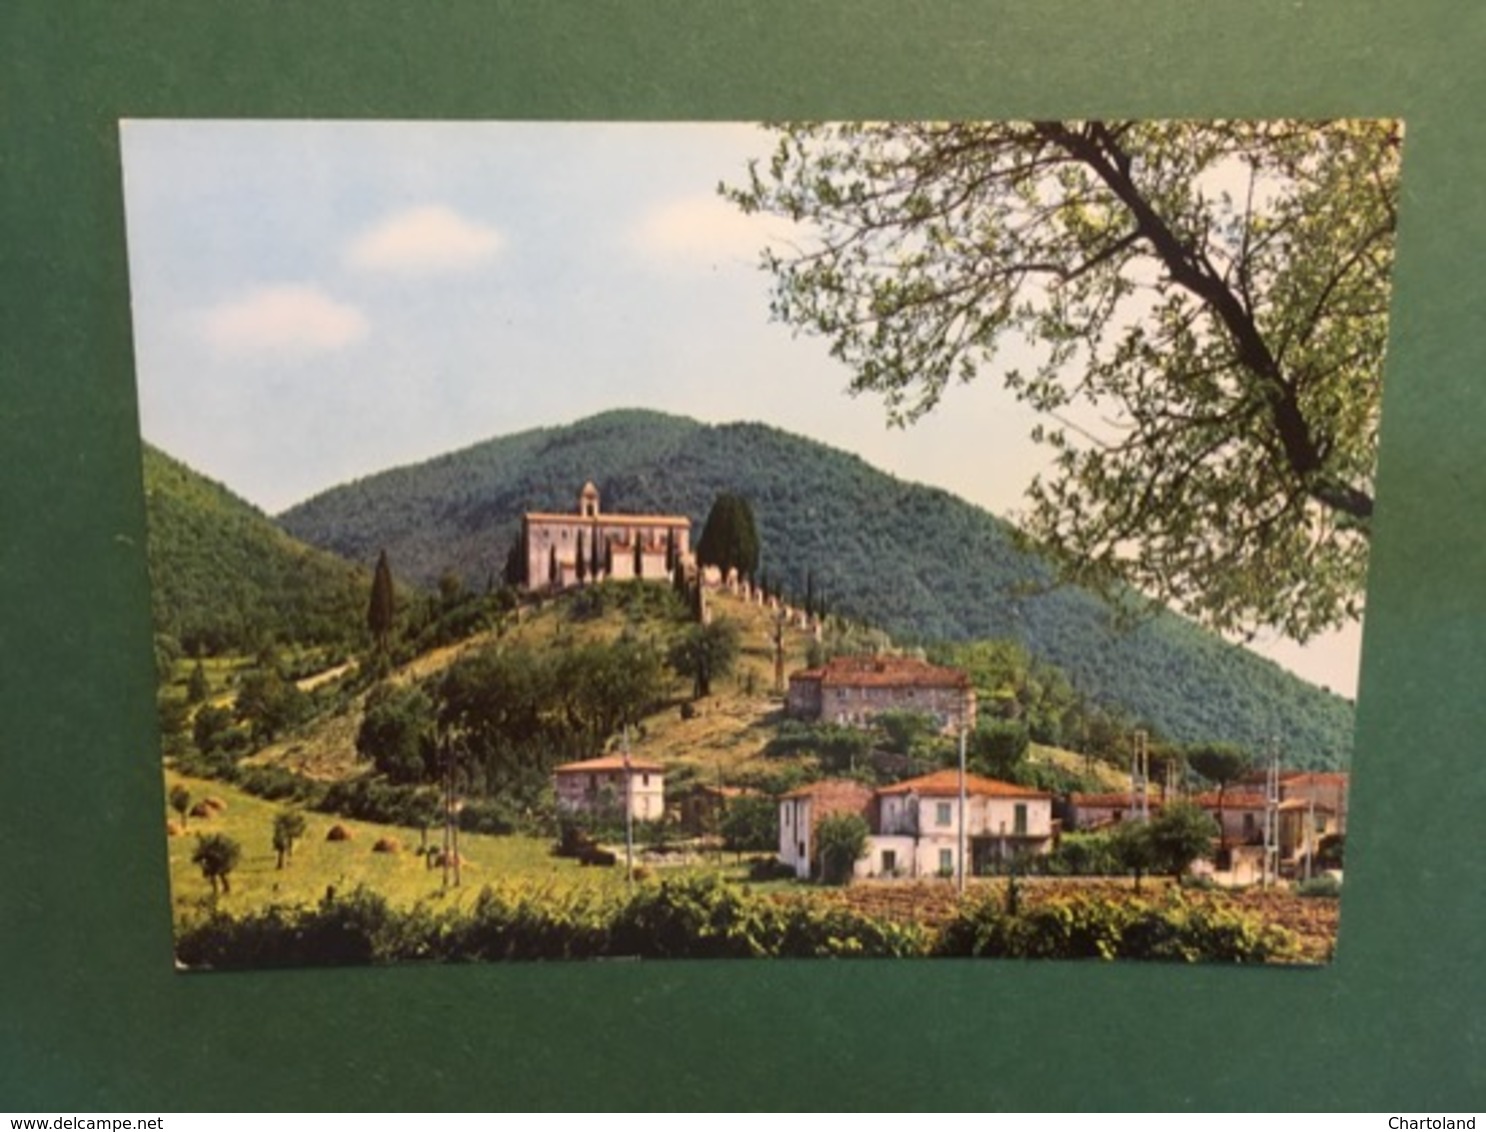 Cartolina Rieti - Convento Di S. Antonio Del Monte - 1970 Ca. - Rieti